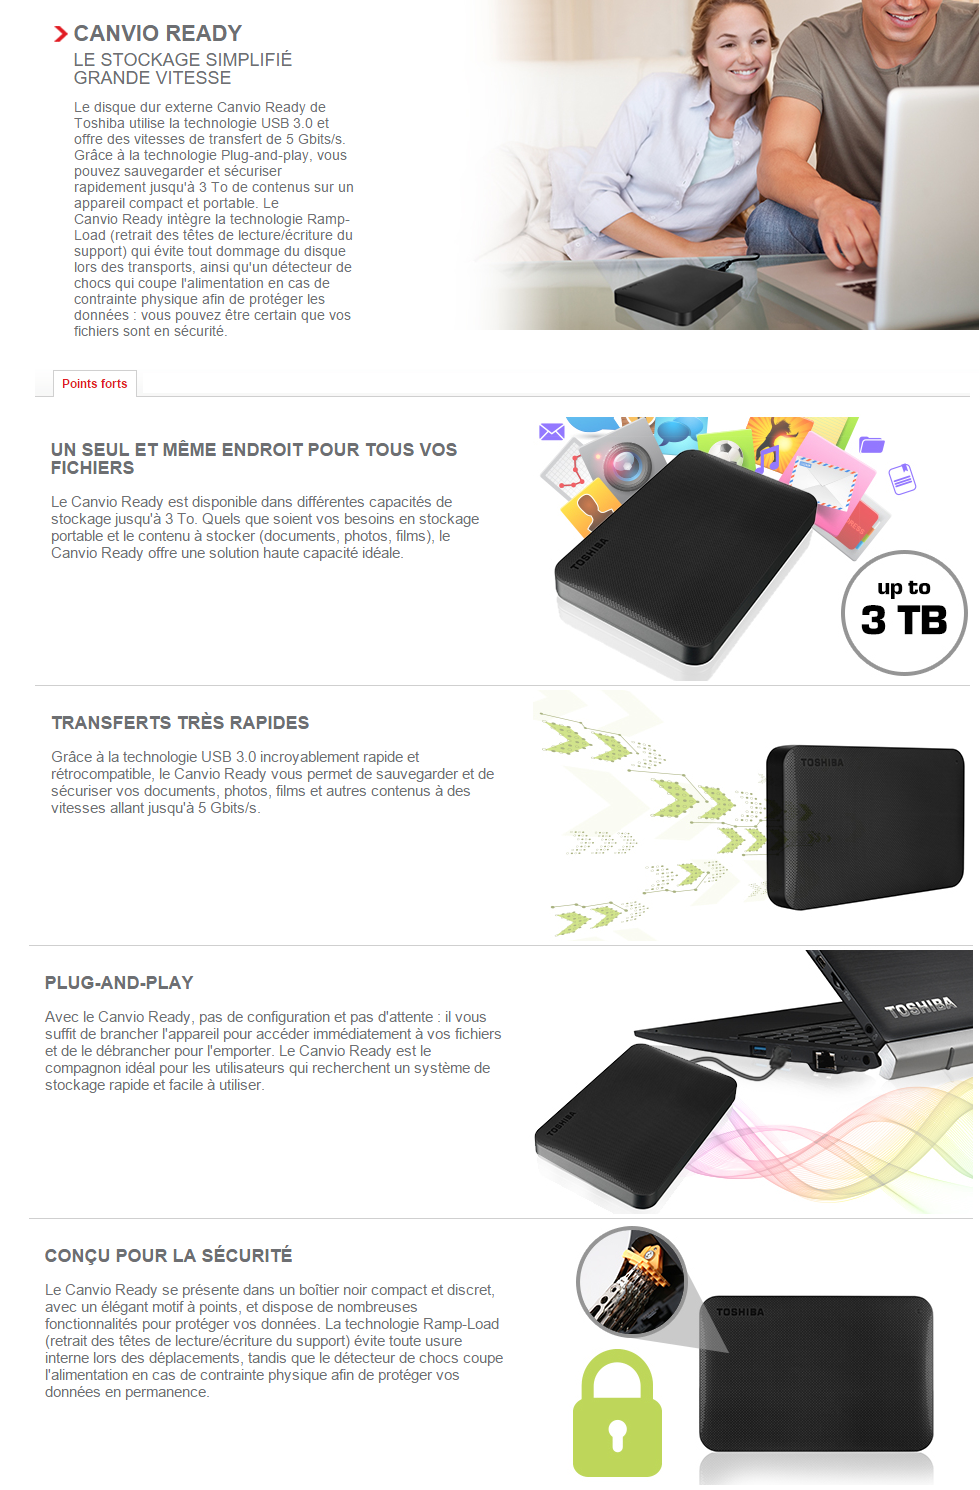 Toshiba Canvio Ready 4 To Noir - Disque dur externe - Garantie 3 ans LDLC